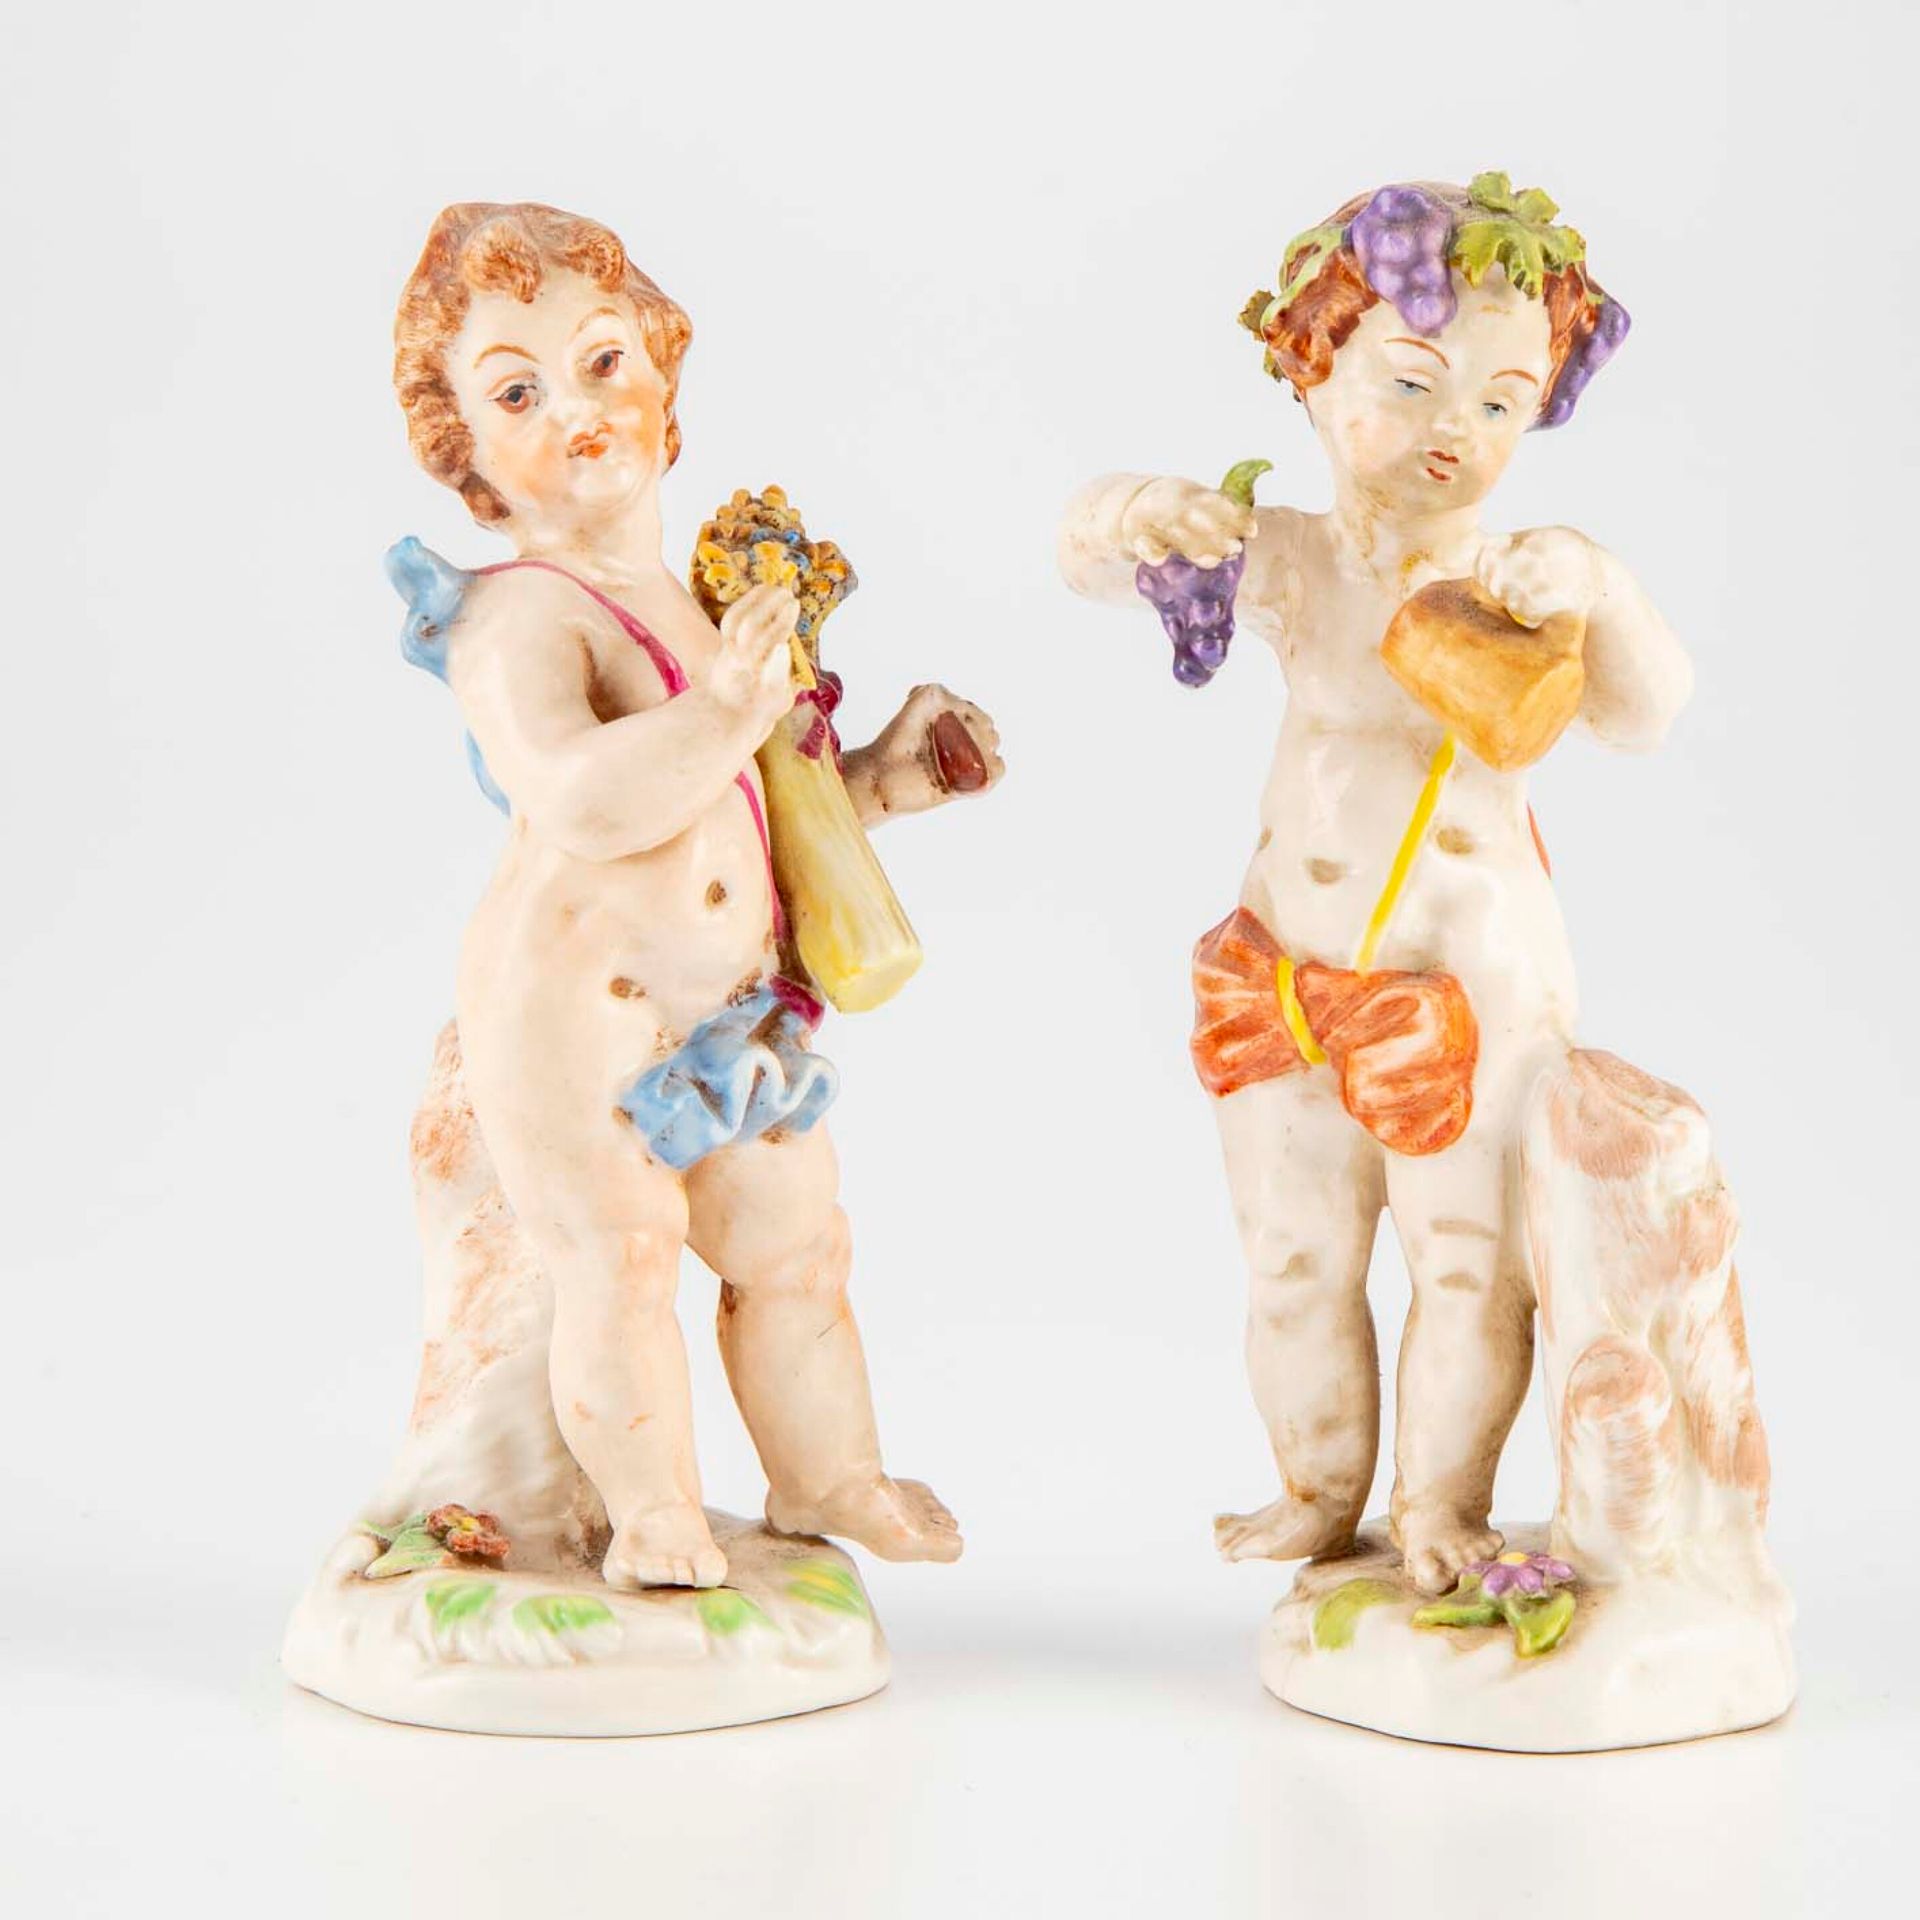 NAPLES NAPOLI (più o meno)

Due statuette di porcellana che rappresentano allego&hellip;